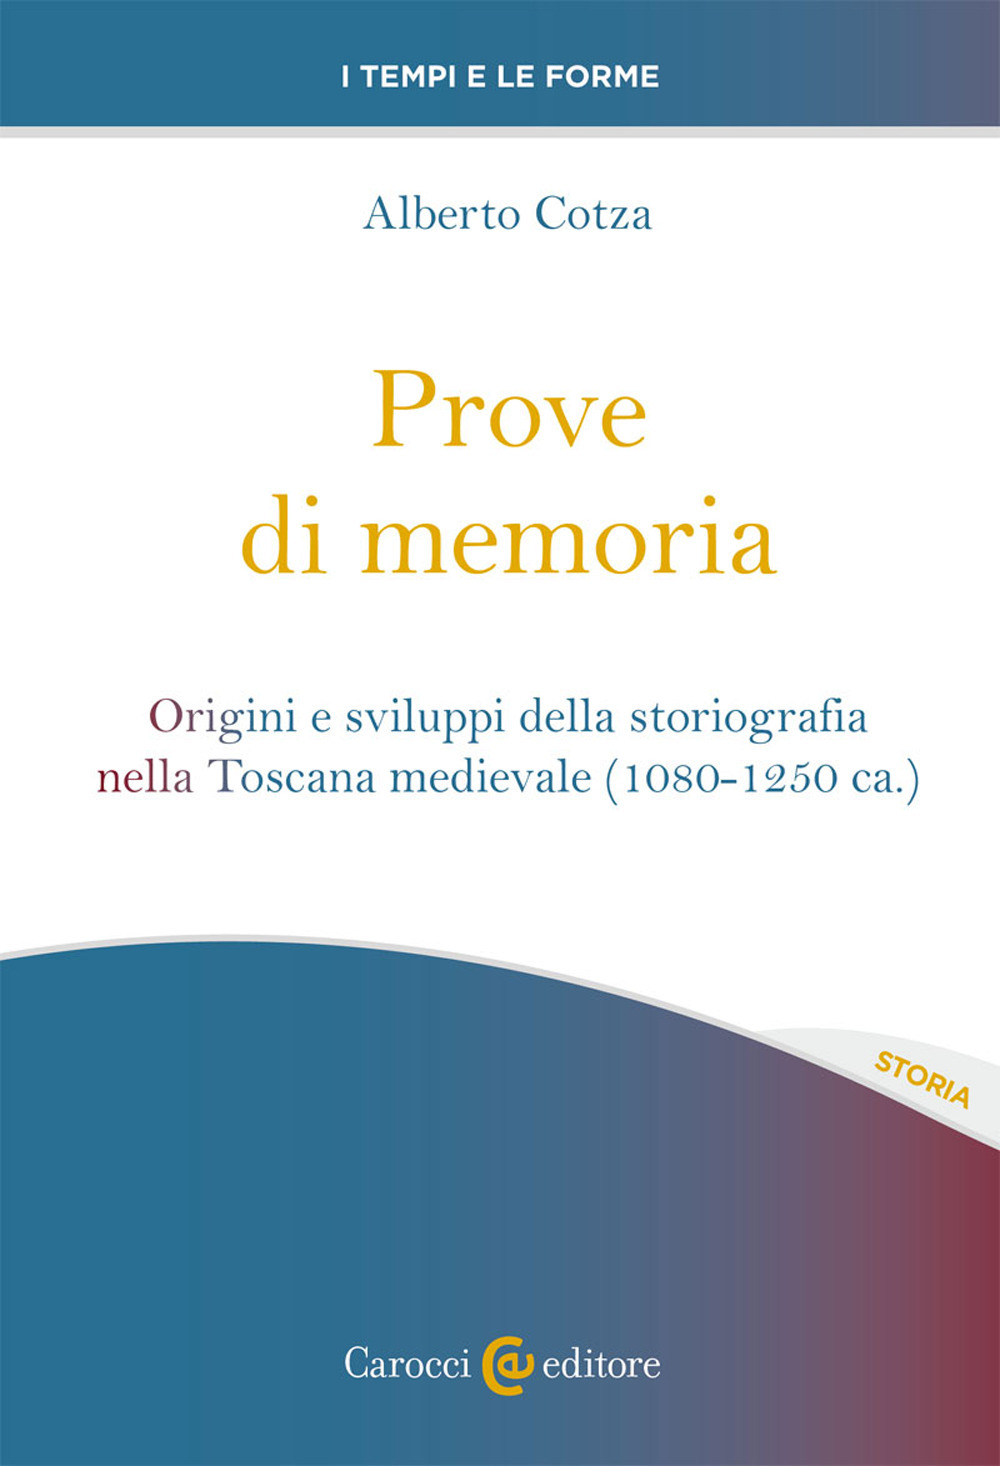 Prove di memoria. Origini e sviluppi della storiografia nella Toscana medievale (1080-1250 ca.)